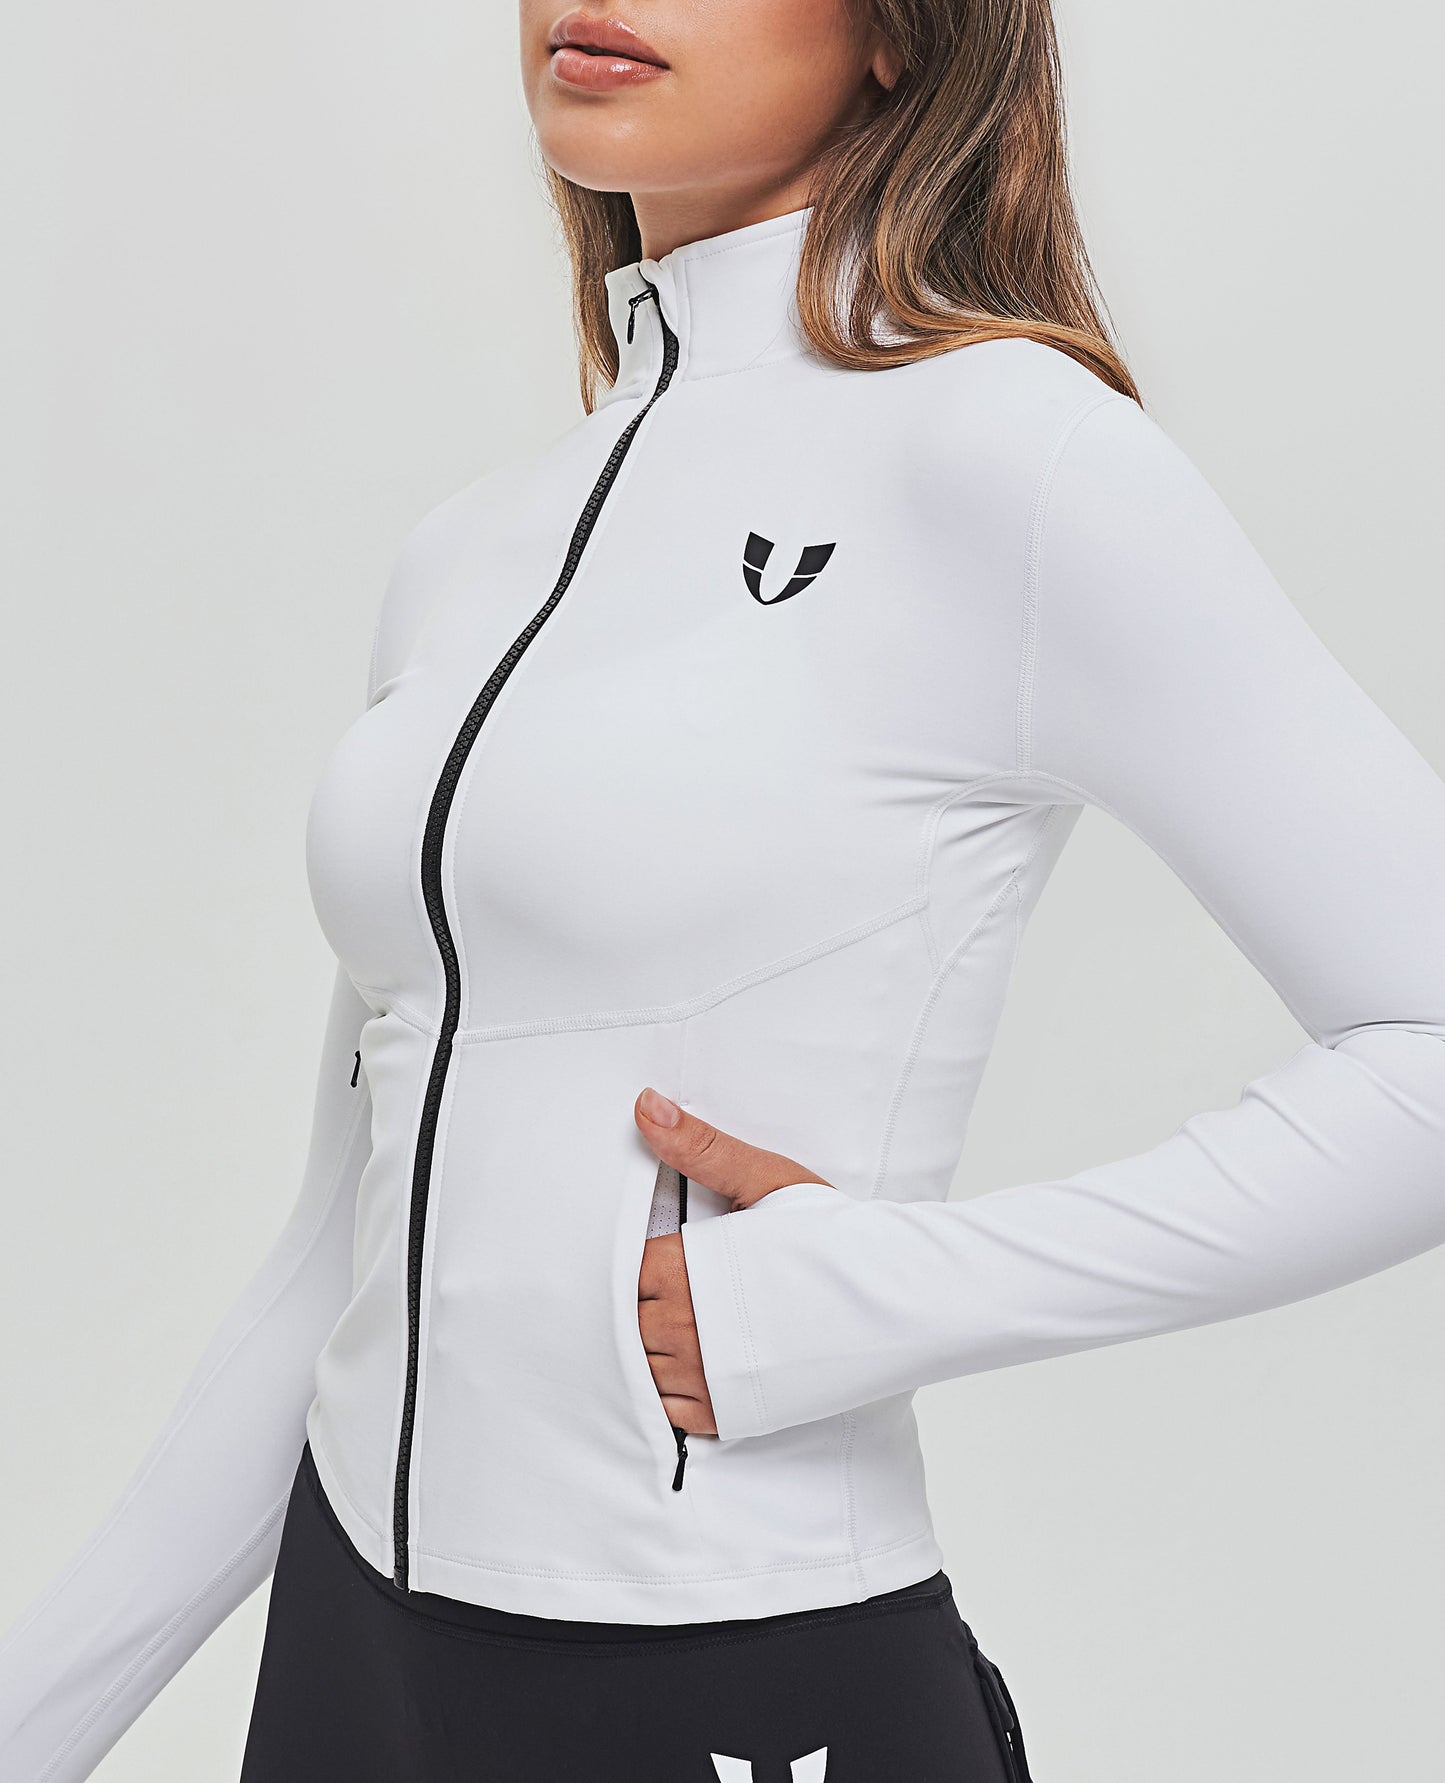 Trainingsjacke mit durchgehendem Reißverschluss – Weiß